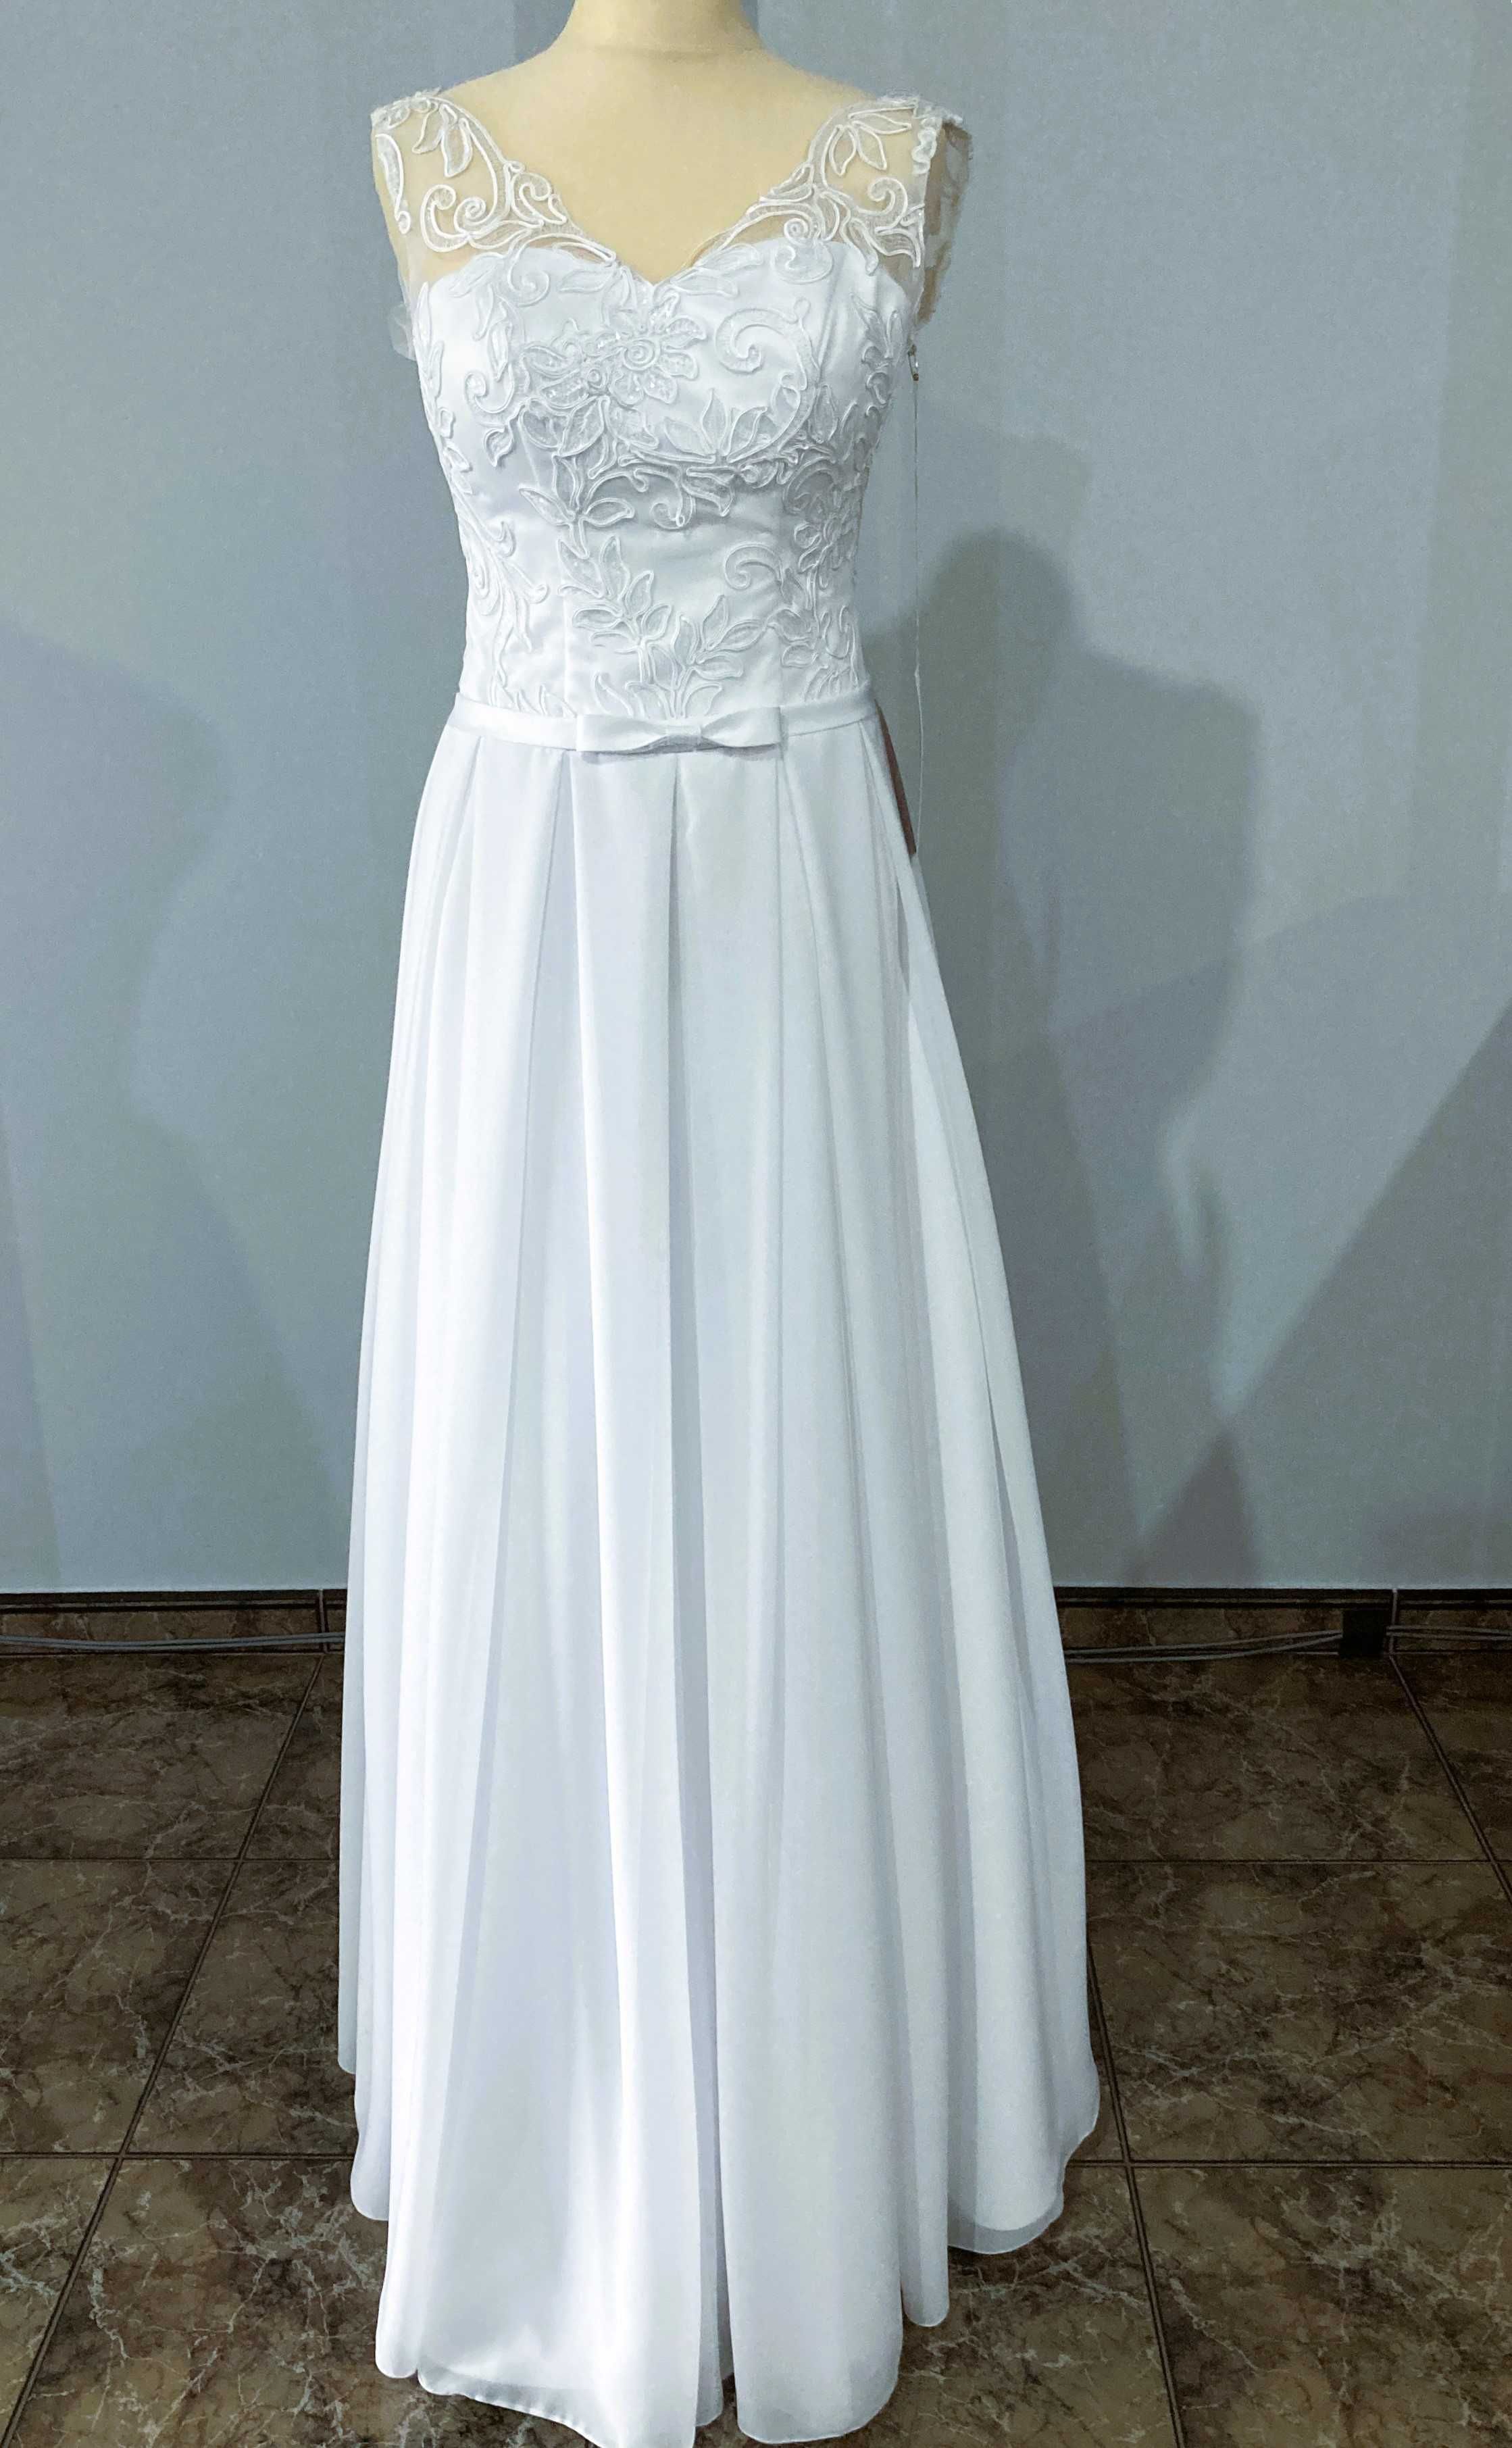 Monika, nowa suknia ślubna, biała r. 38, wyprzedaż